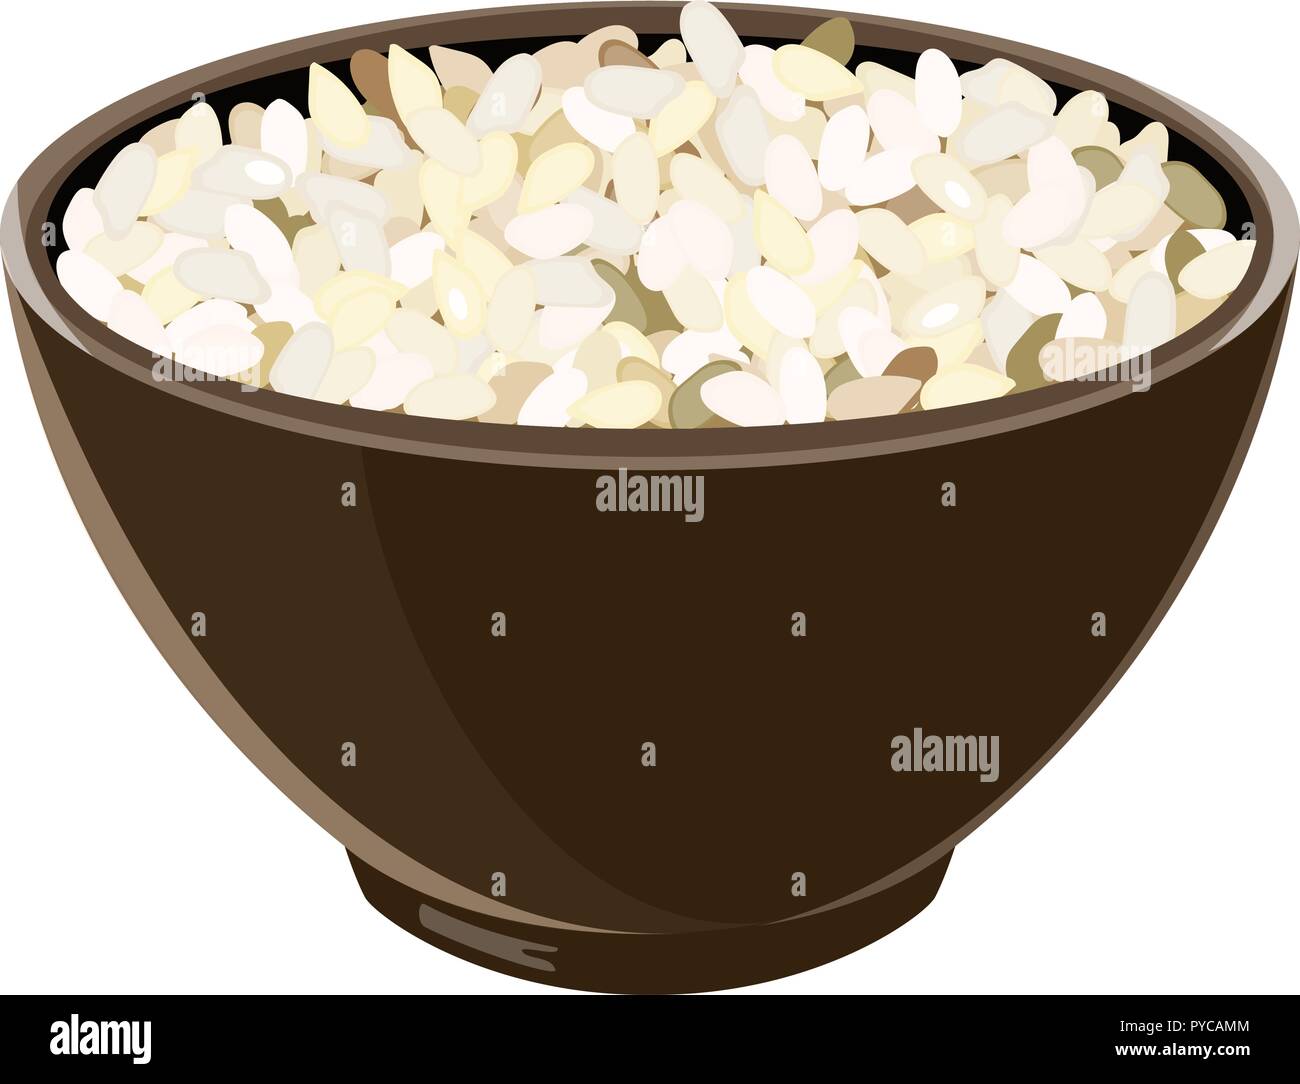 Tas de bouillie risotto Arborio dans Bol en céramique marron. Vector illustration. Vector illustration. pour la cuisine, menu, culinaires, Illustration de Vecteur